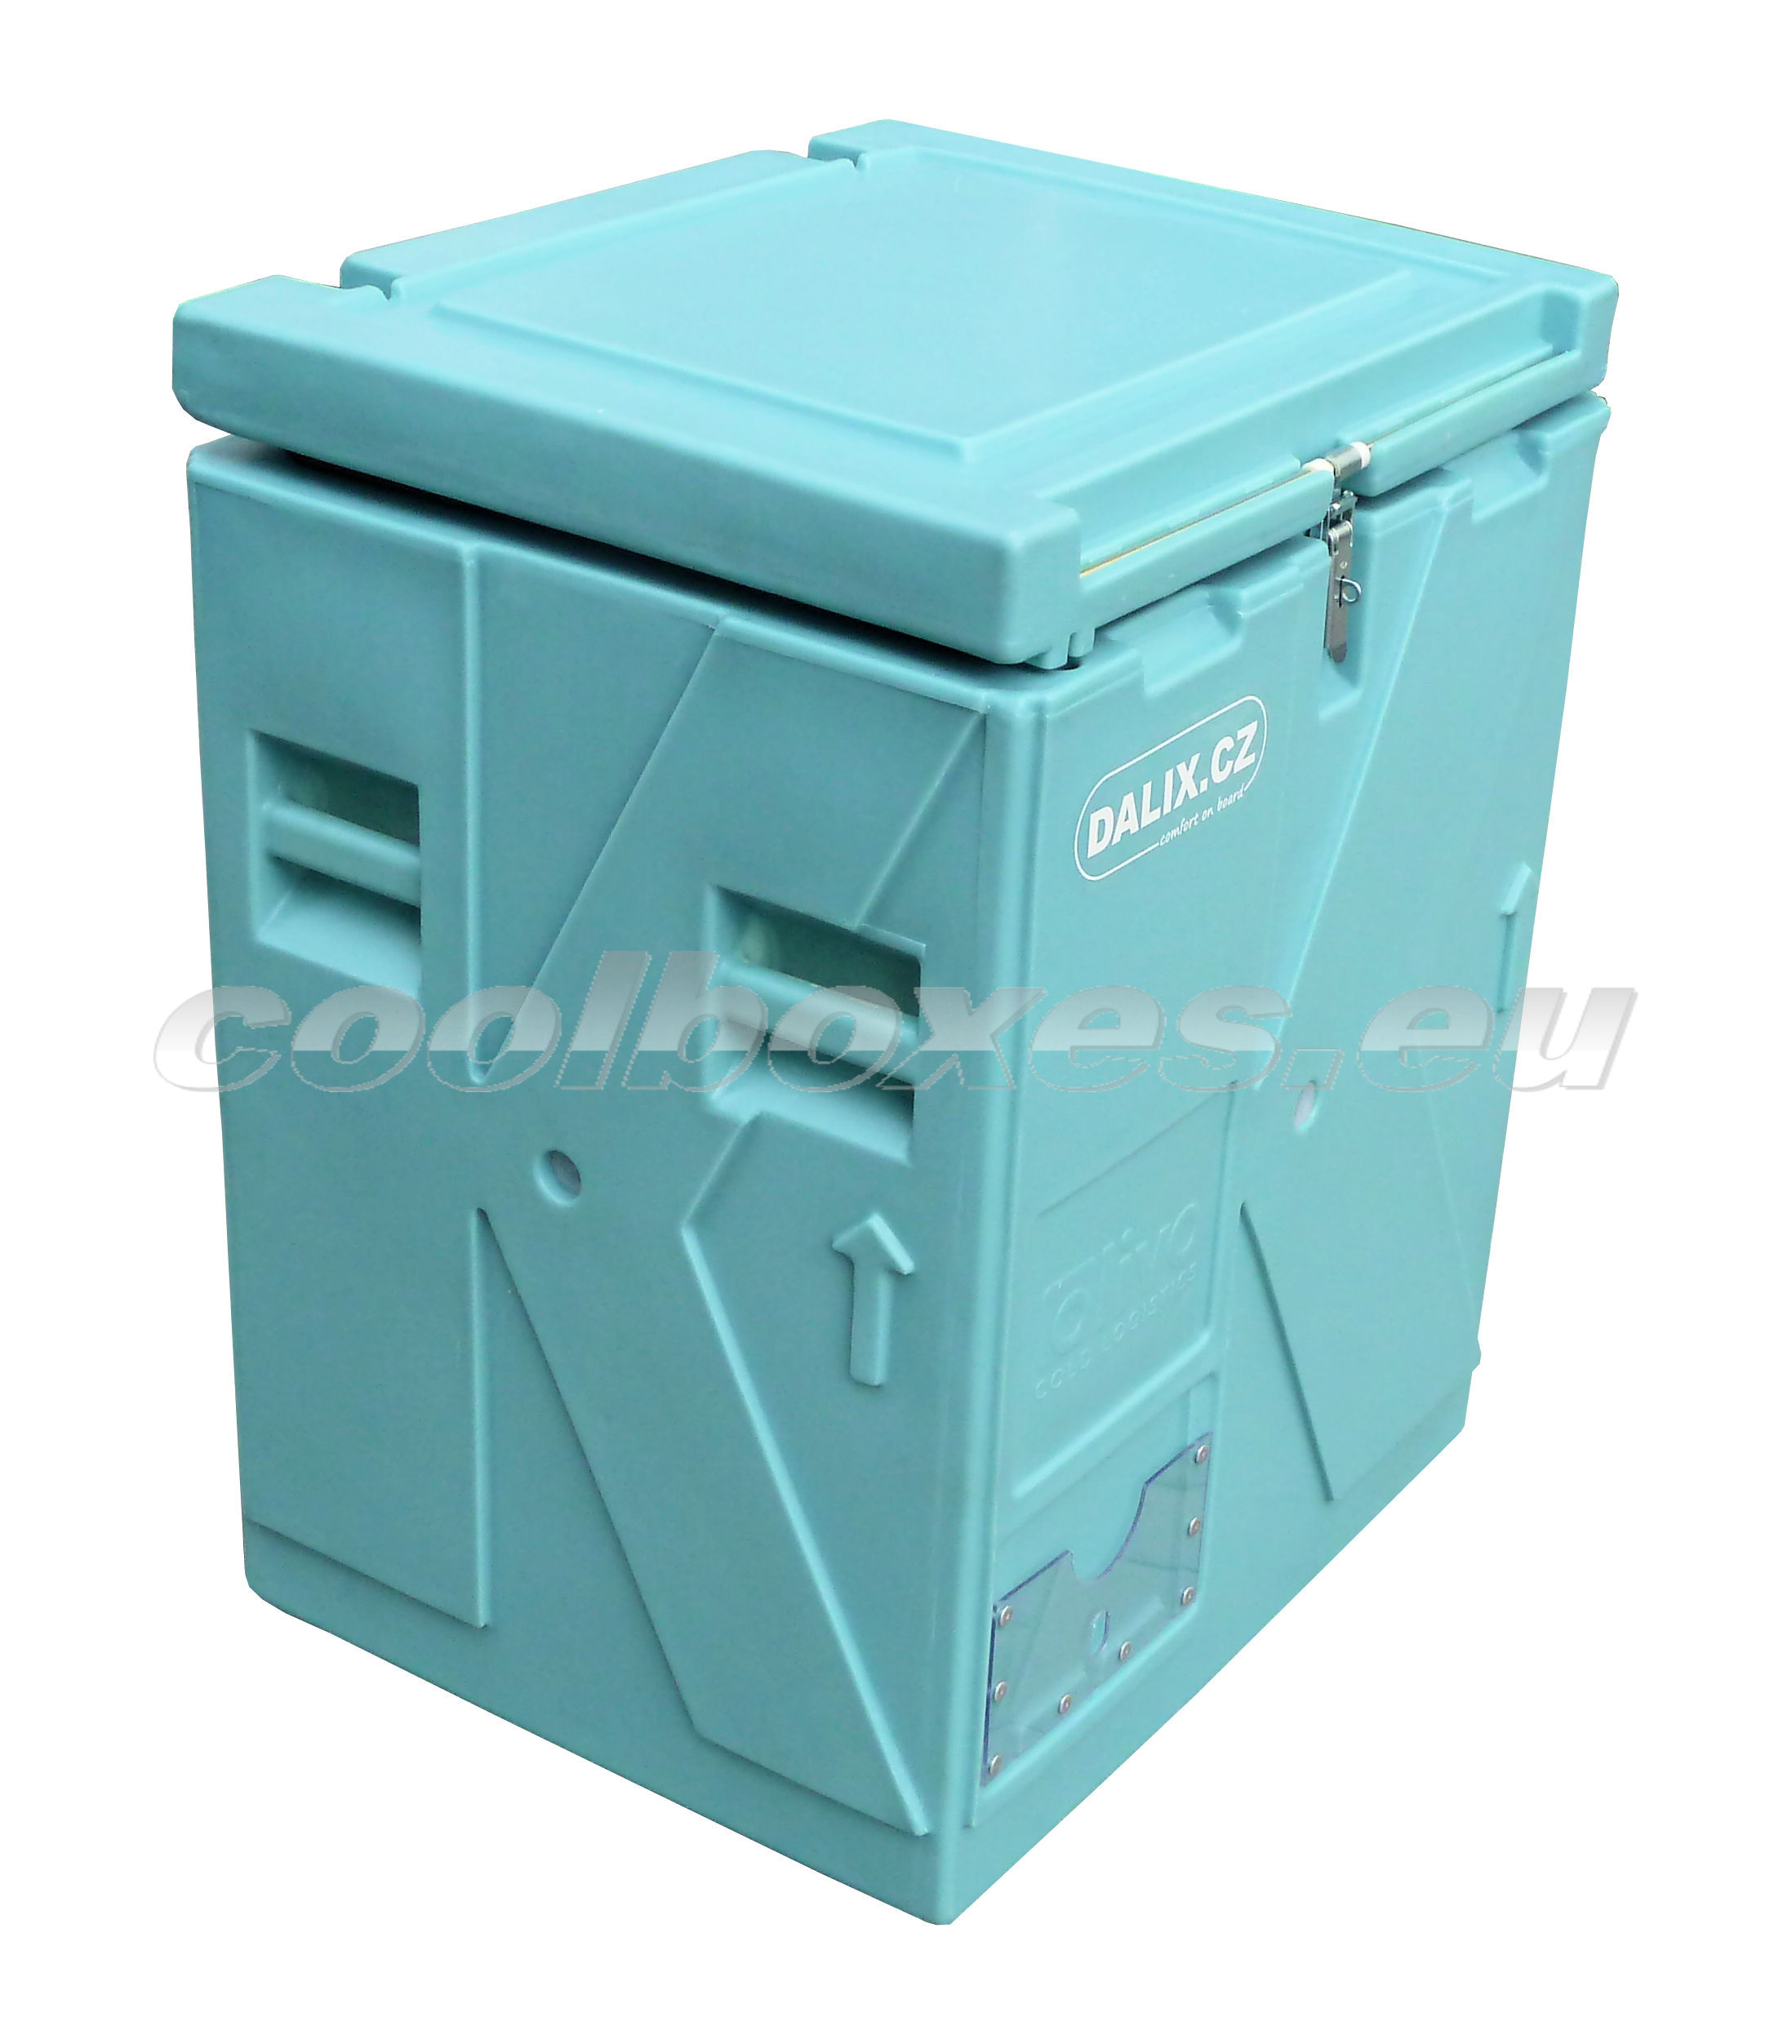 Eutekticky chlazený izolovaný box Olivo BAC 70 - 106 litrů